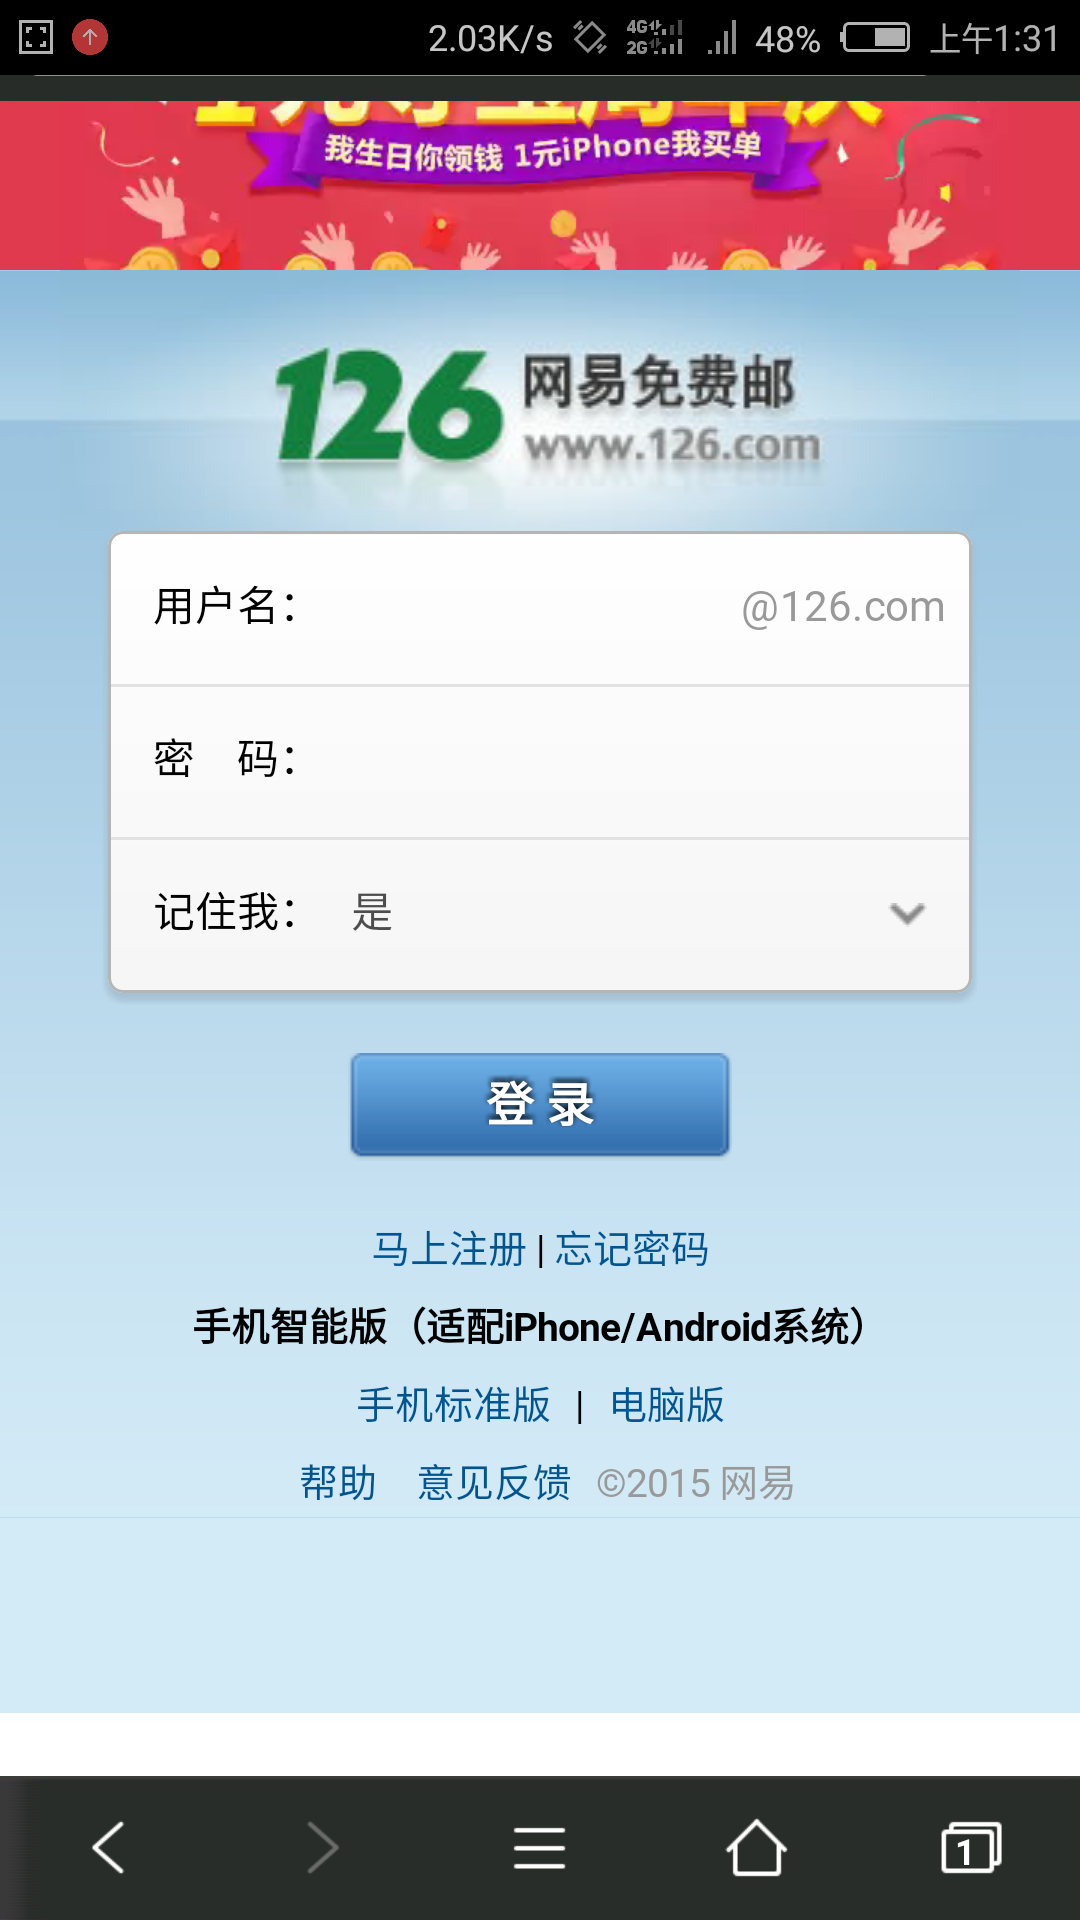 126(中國網際網路技術公司)